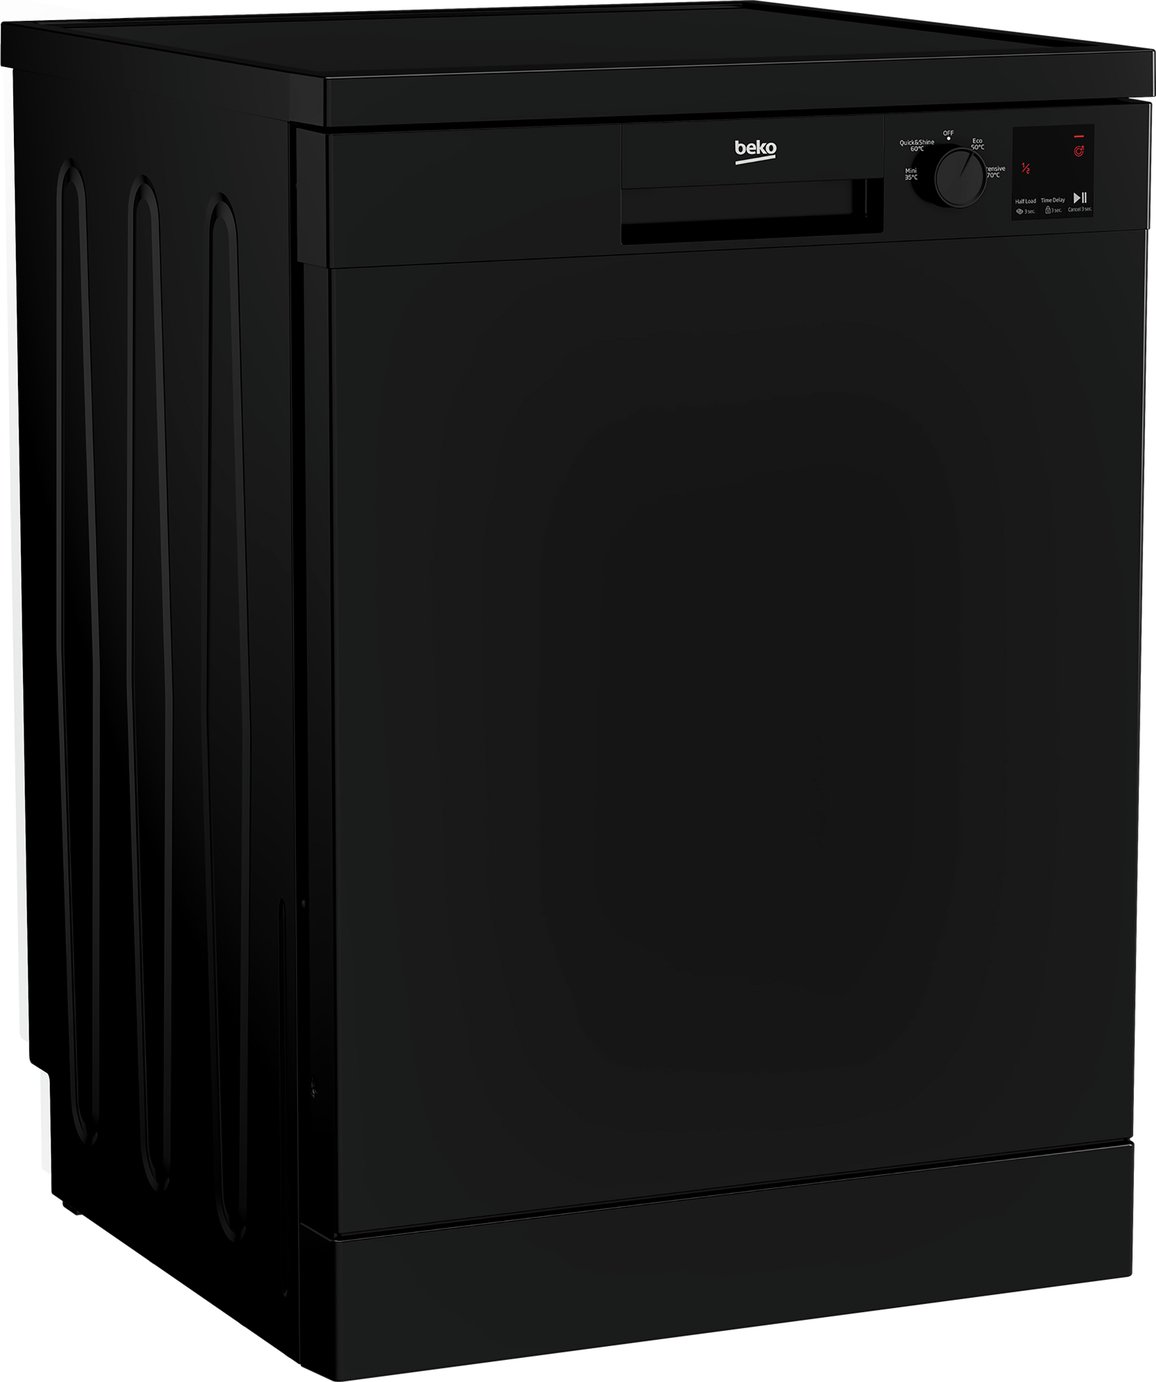 Beko DVN04320B Full Size Dishwasher Review